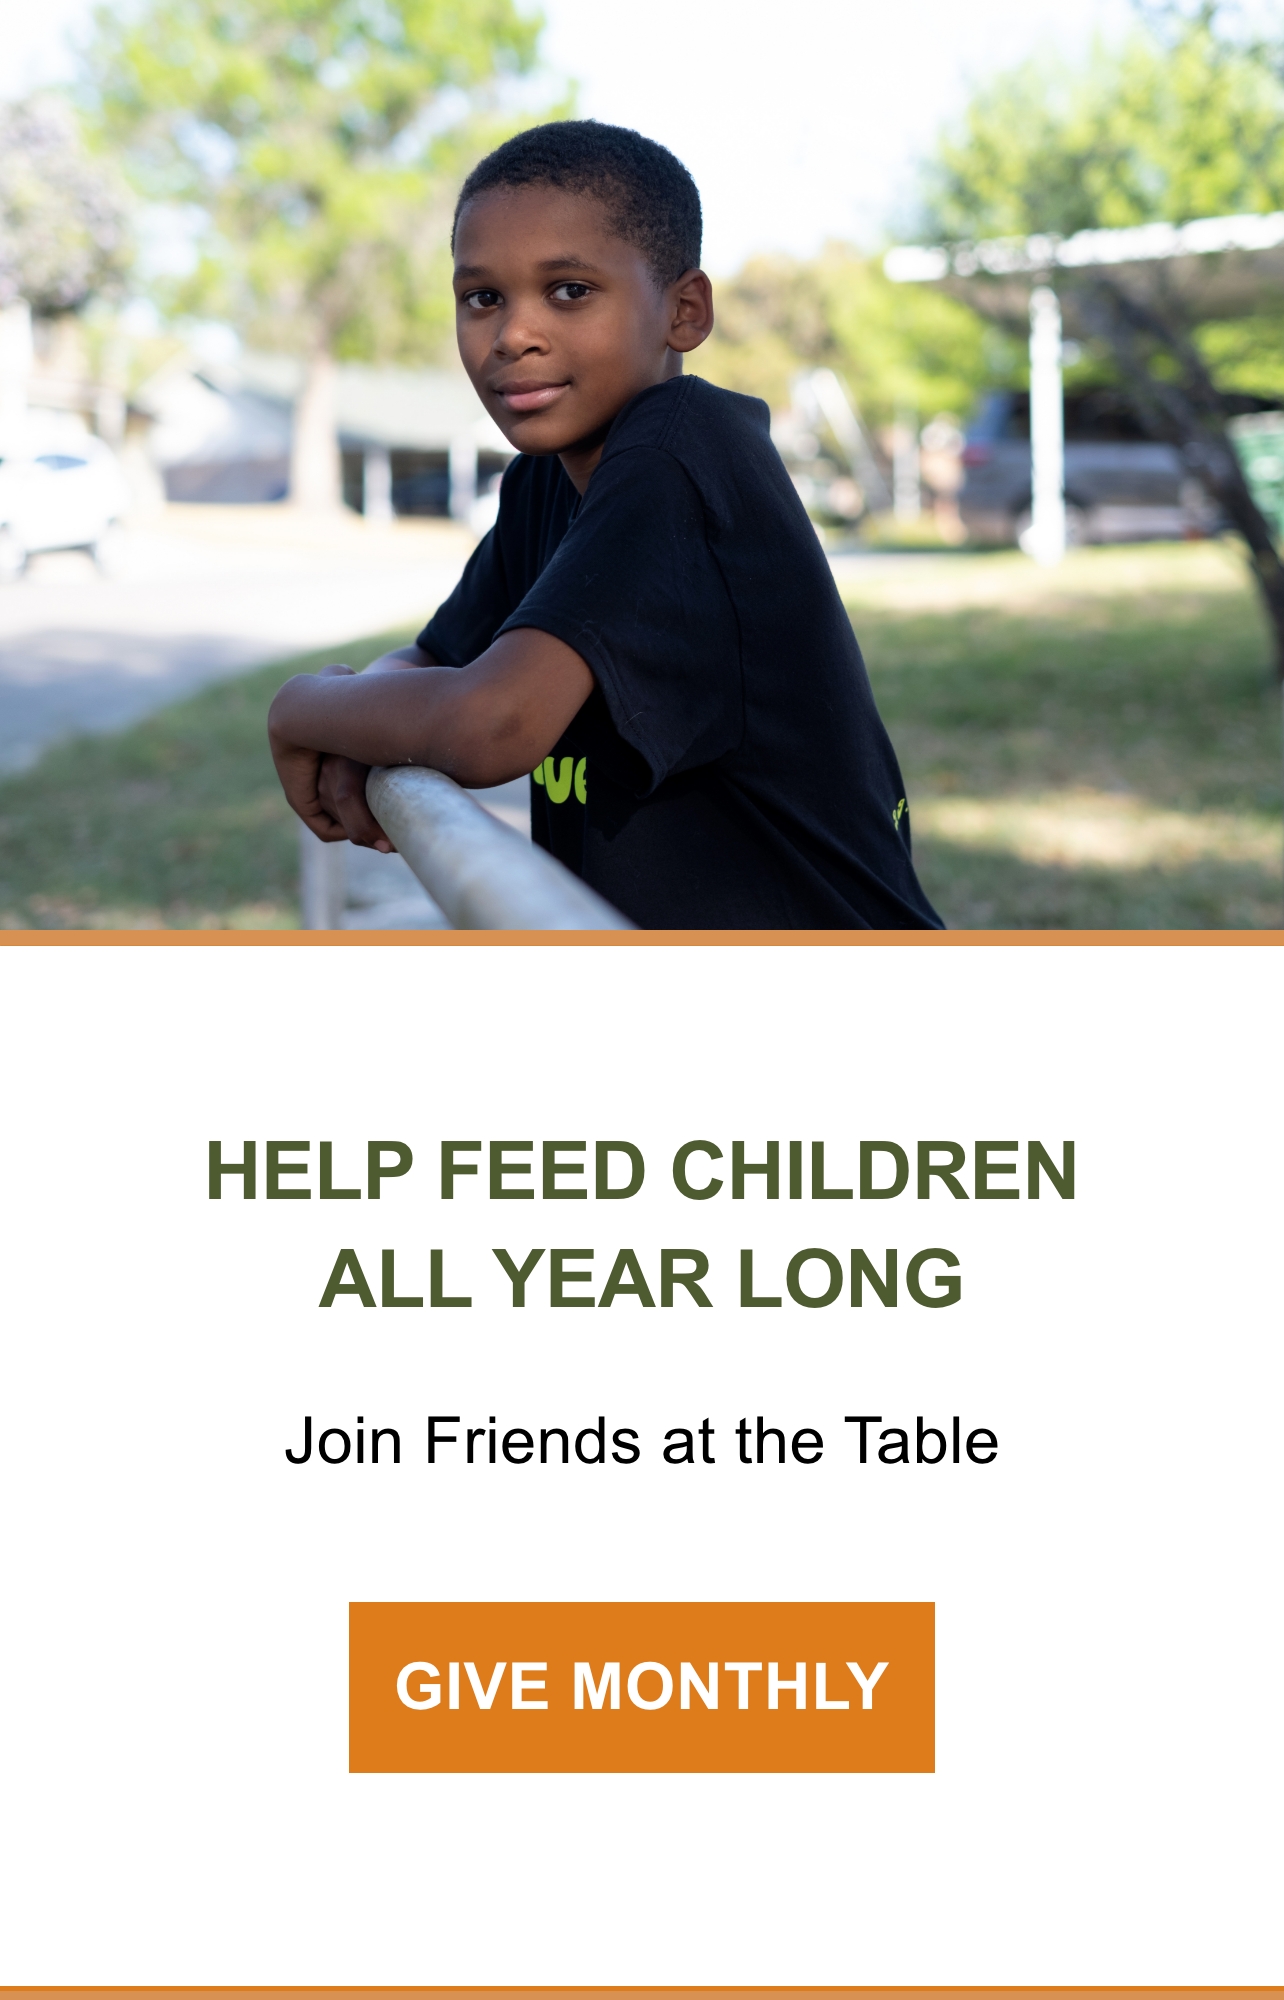 مساعدة الأطفال في إطعام الأطفال طوال العام